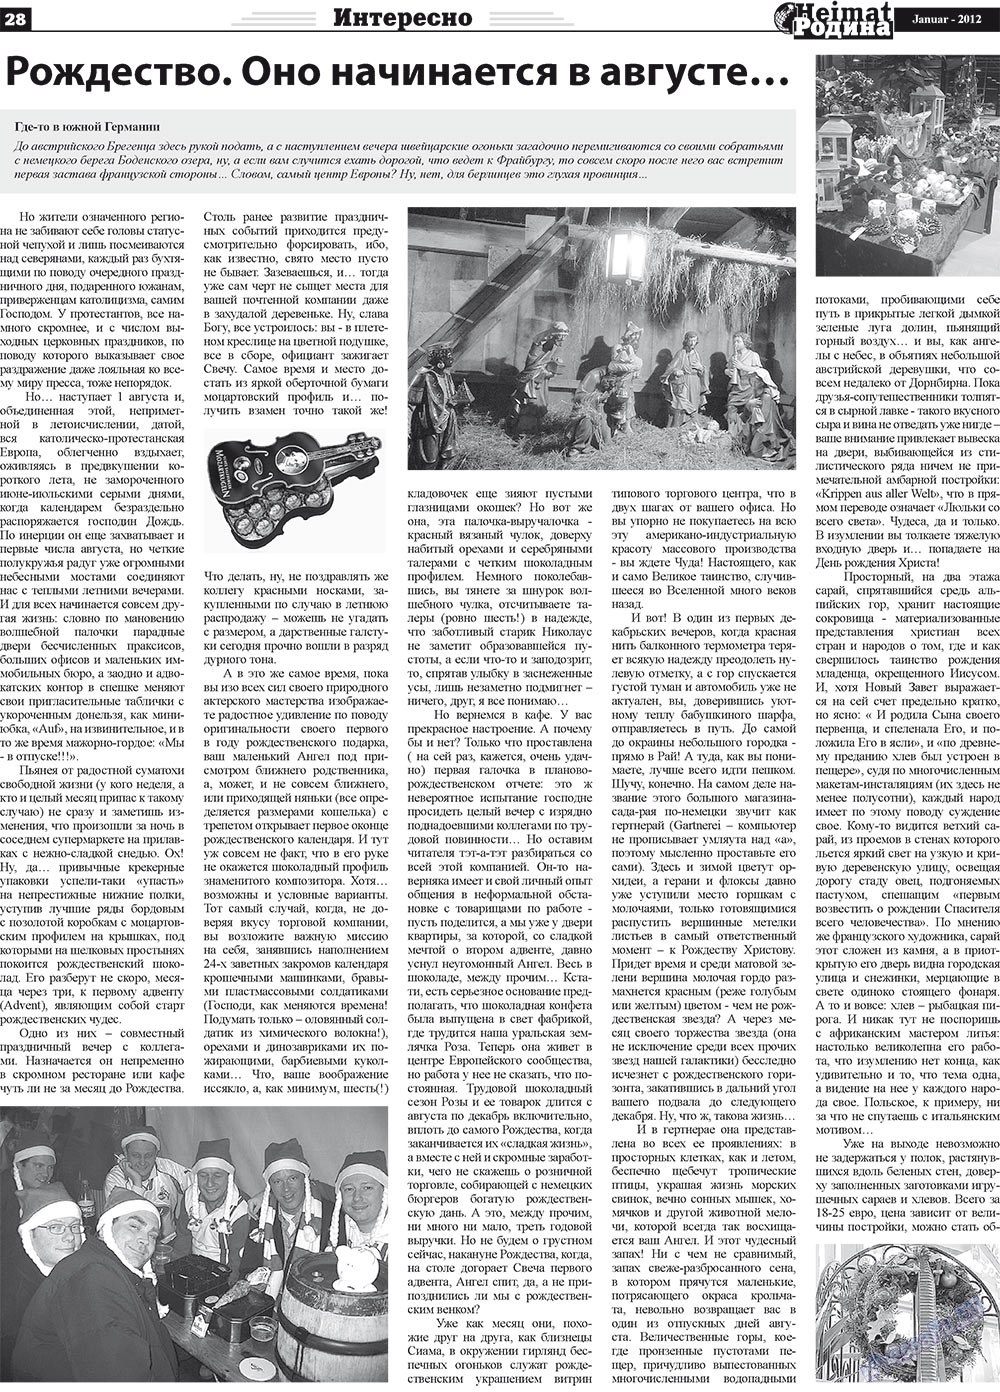 Heimat-Родина (Zeitung). 2012 Jahr, Ausgabe 1, Seite 28